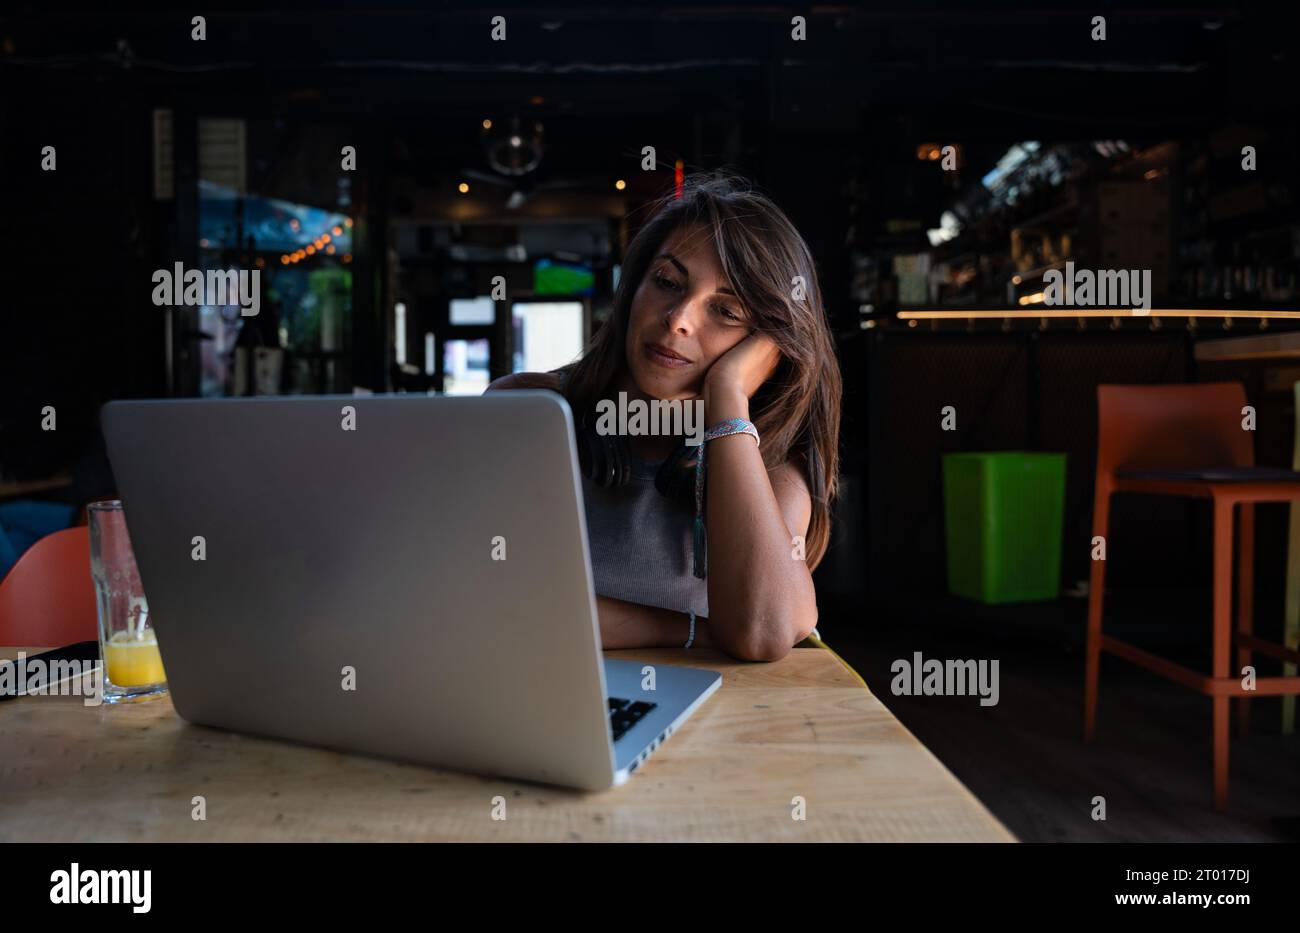 Junge, hart arbeitende, freiberuflich arbeitende Geschäftsfrau oder Studentin arbeiten und studieren online auf Laptop-Computer, während sie in Cafeteria oder Coffee Shop Typi sitzen Stockfoto